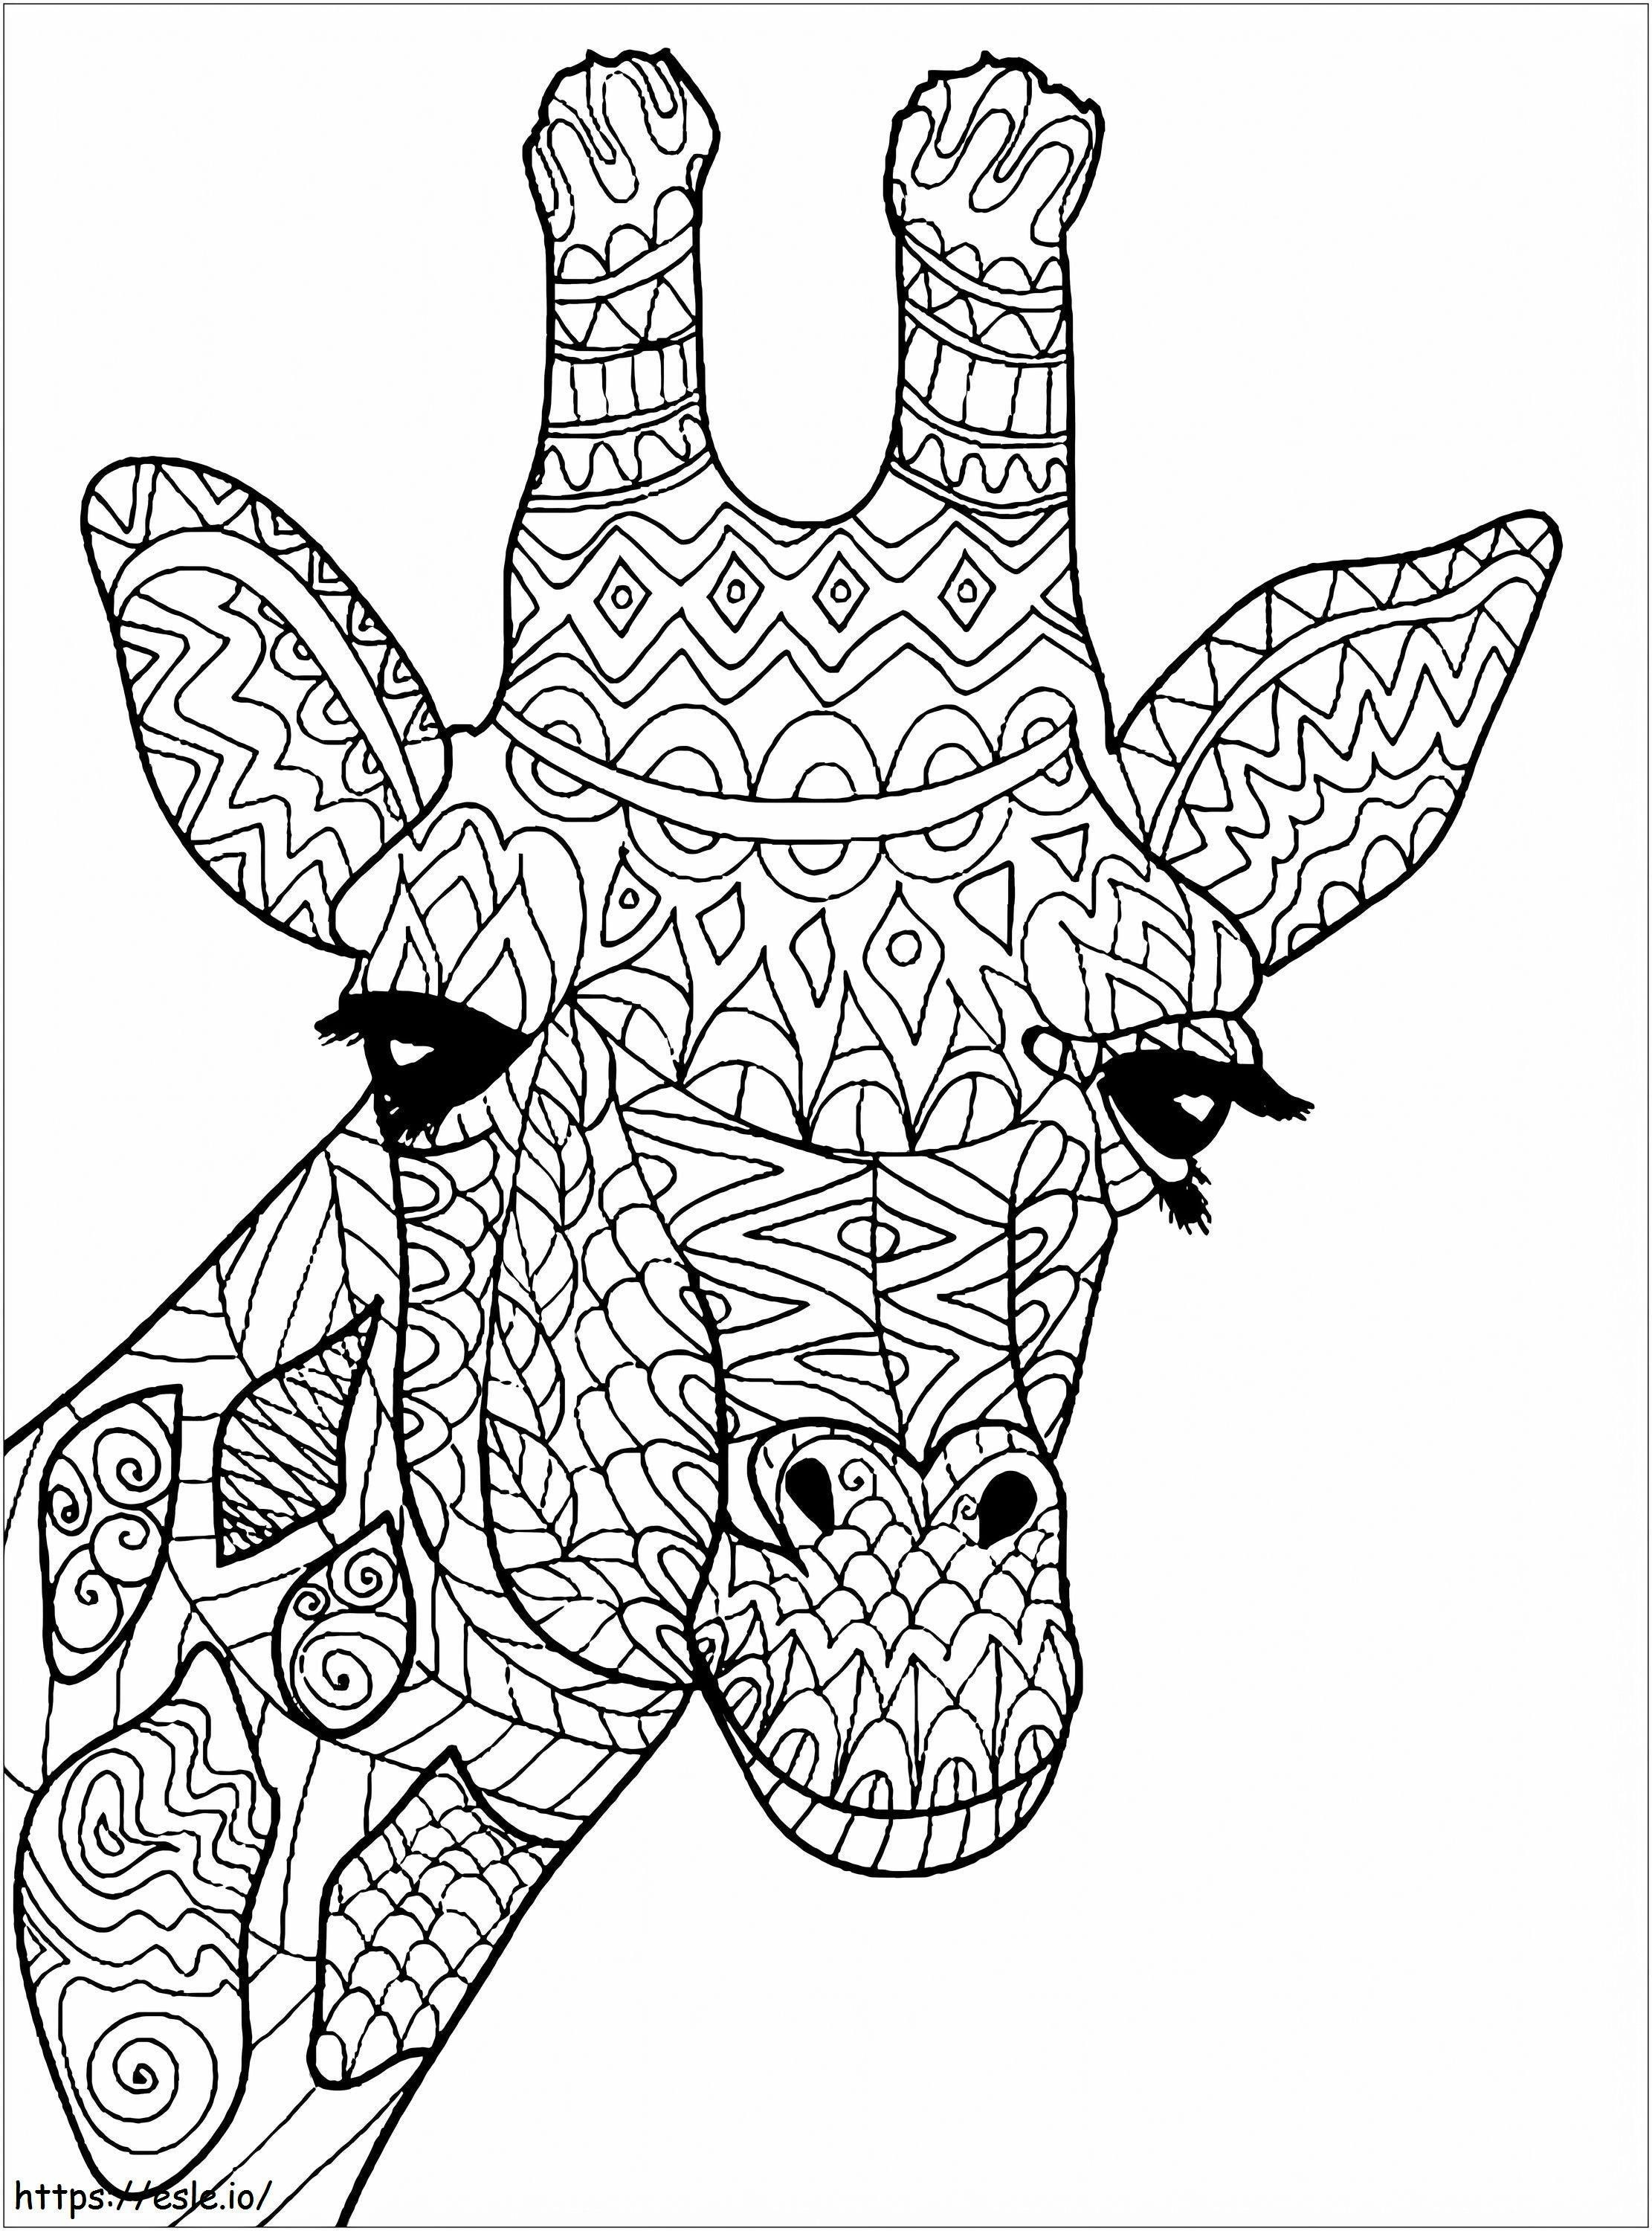 Mandala cabeça de girafa para colorir